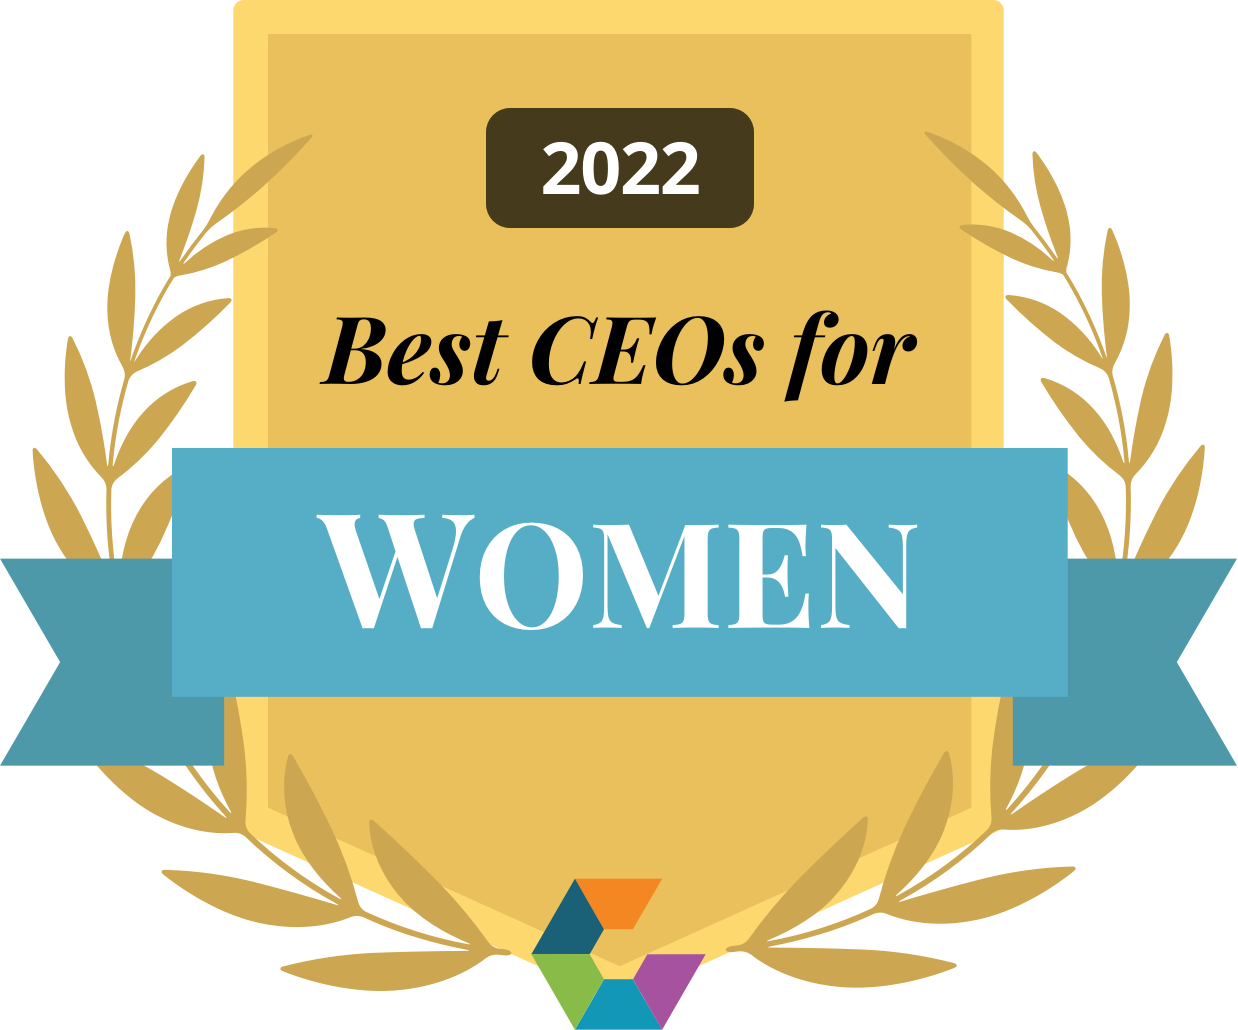 Best CEOs for WOMEN 2022